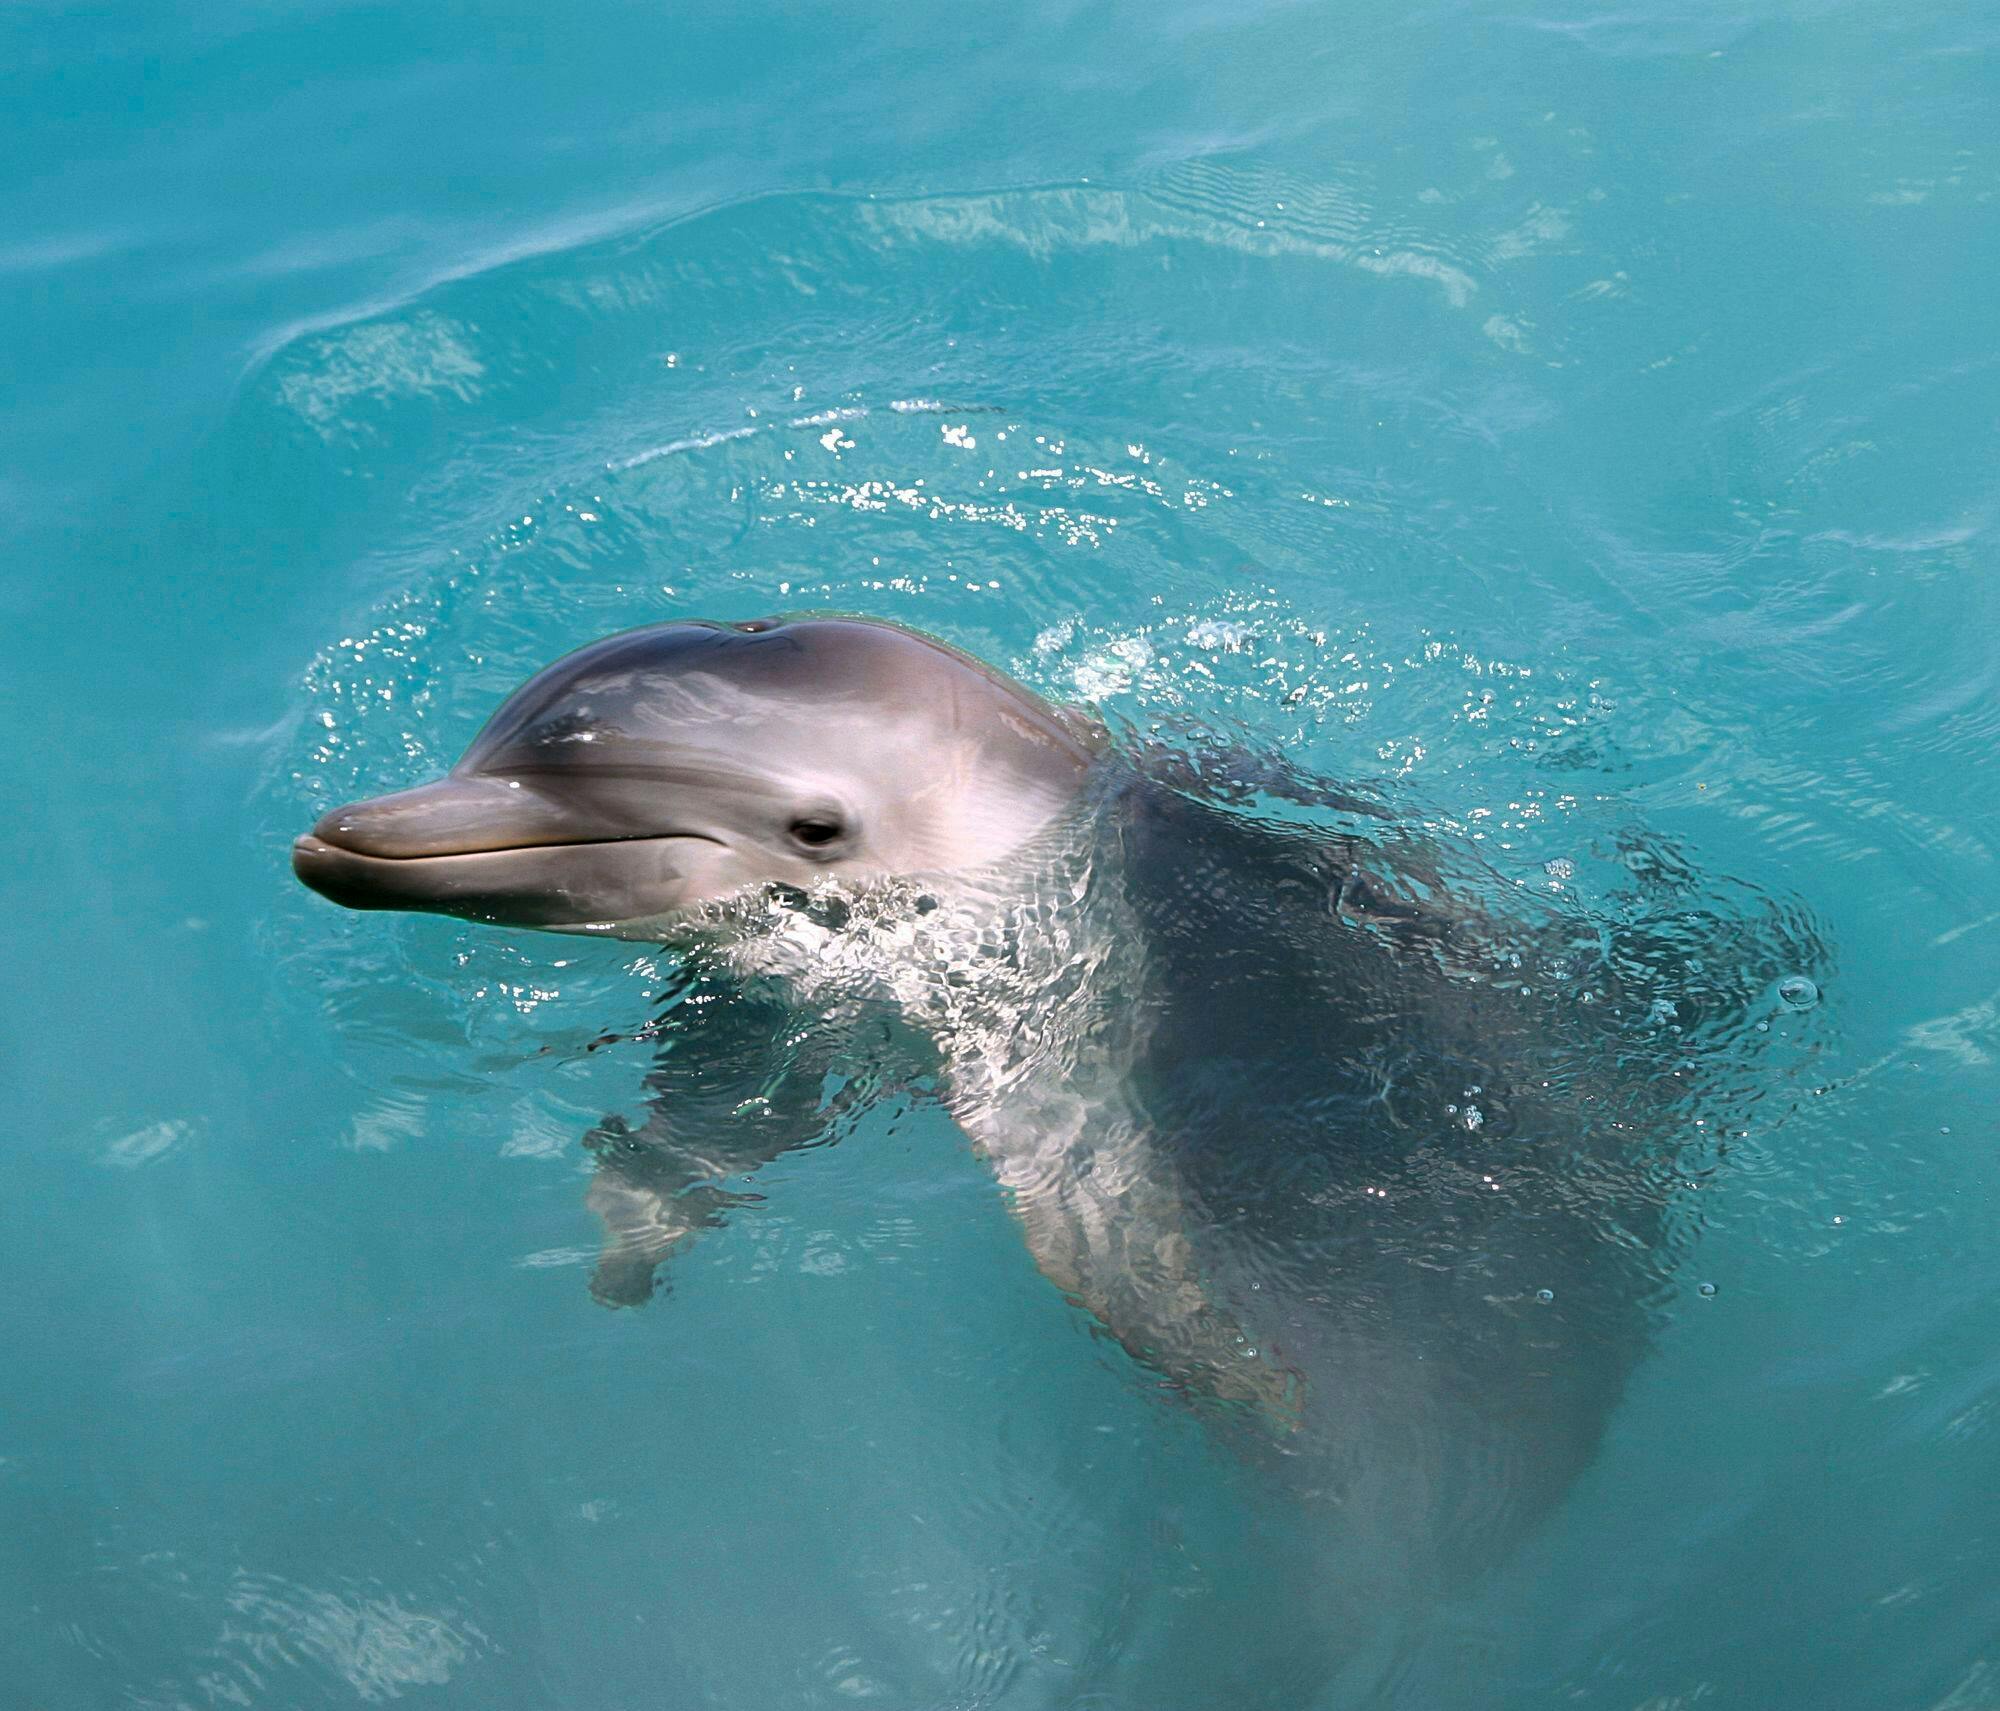 Biglietto per l'avventura di nuoto con i delfini al Dolphin Discovery Isla Mujeres